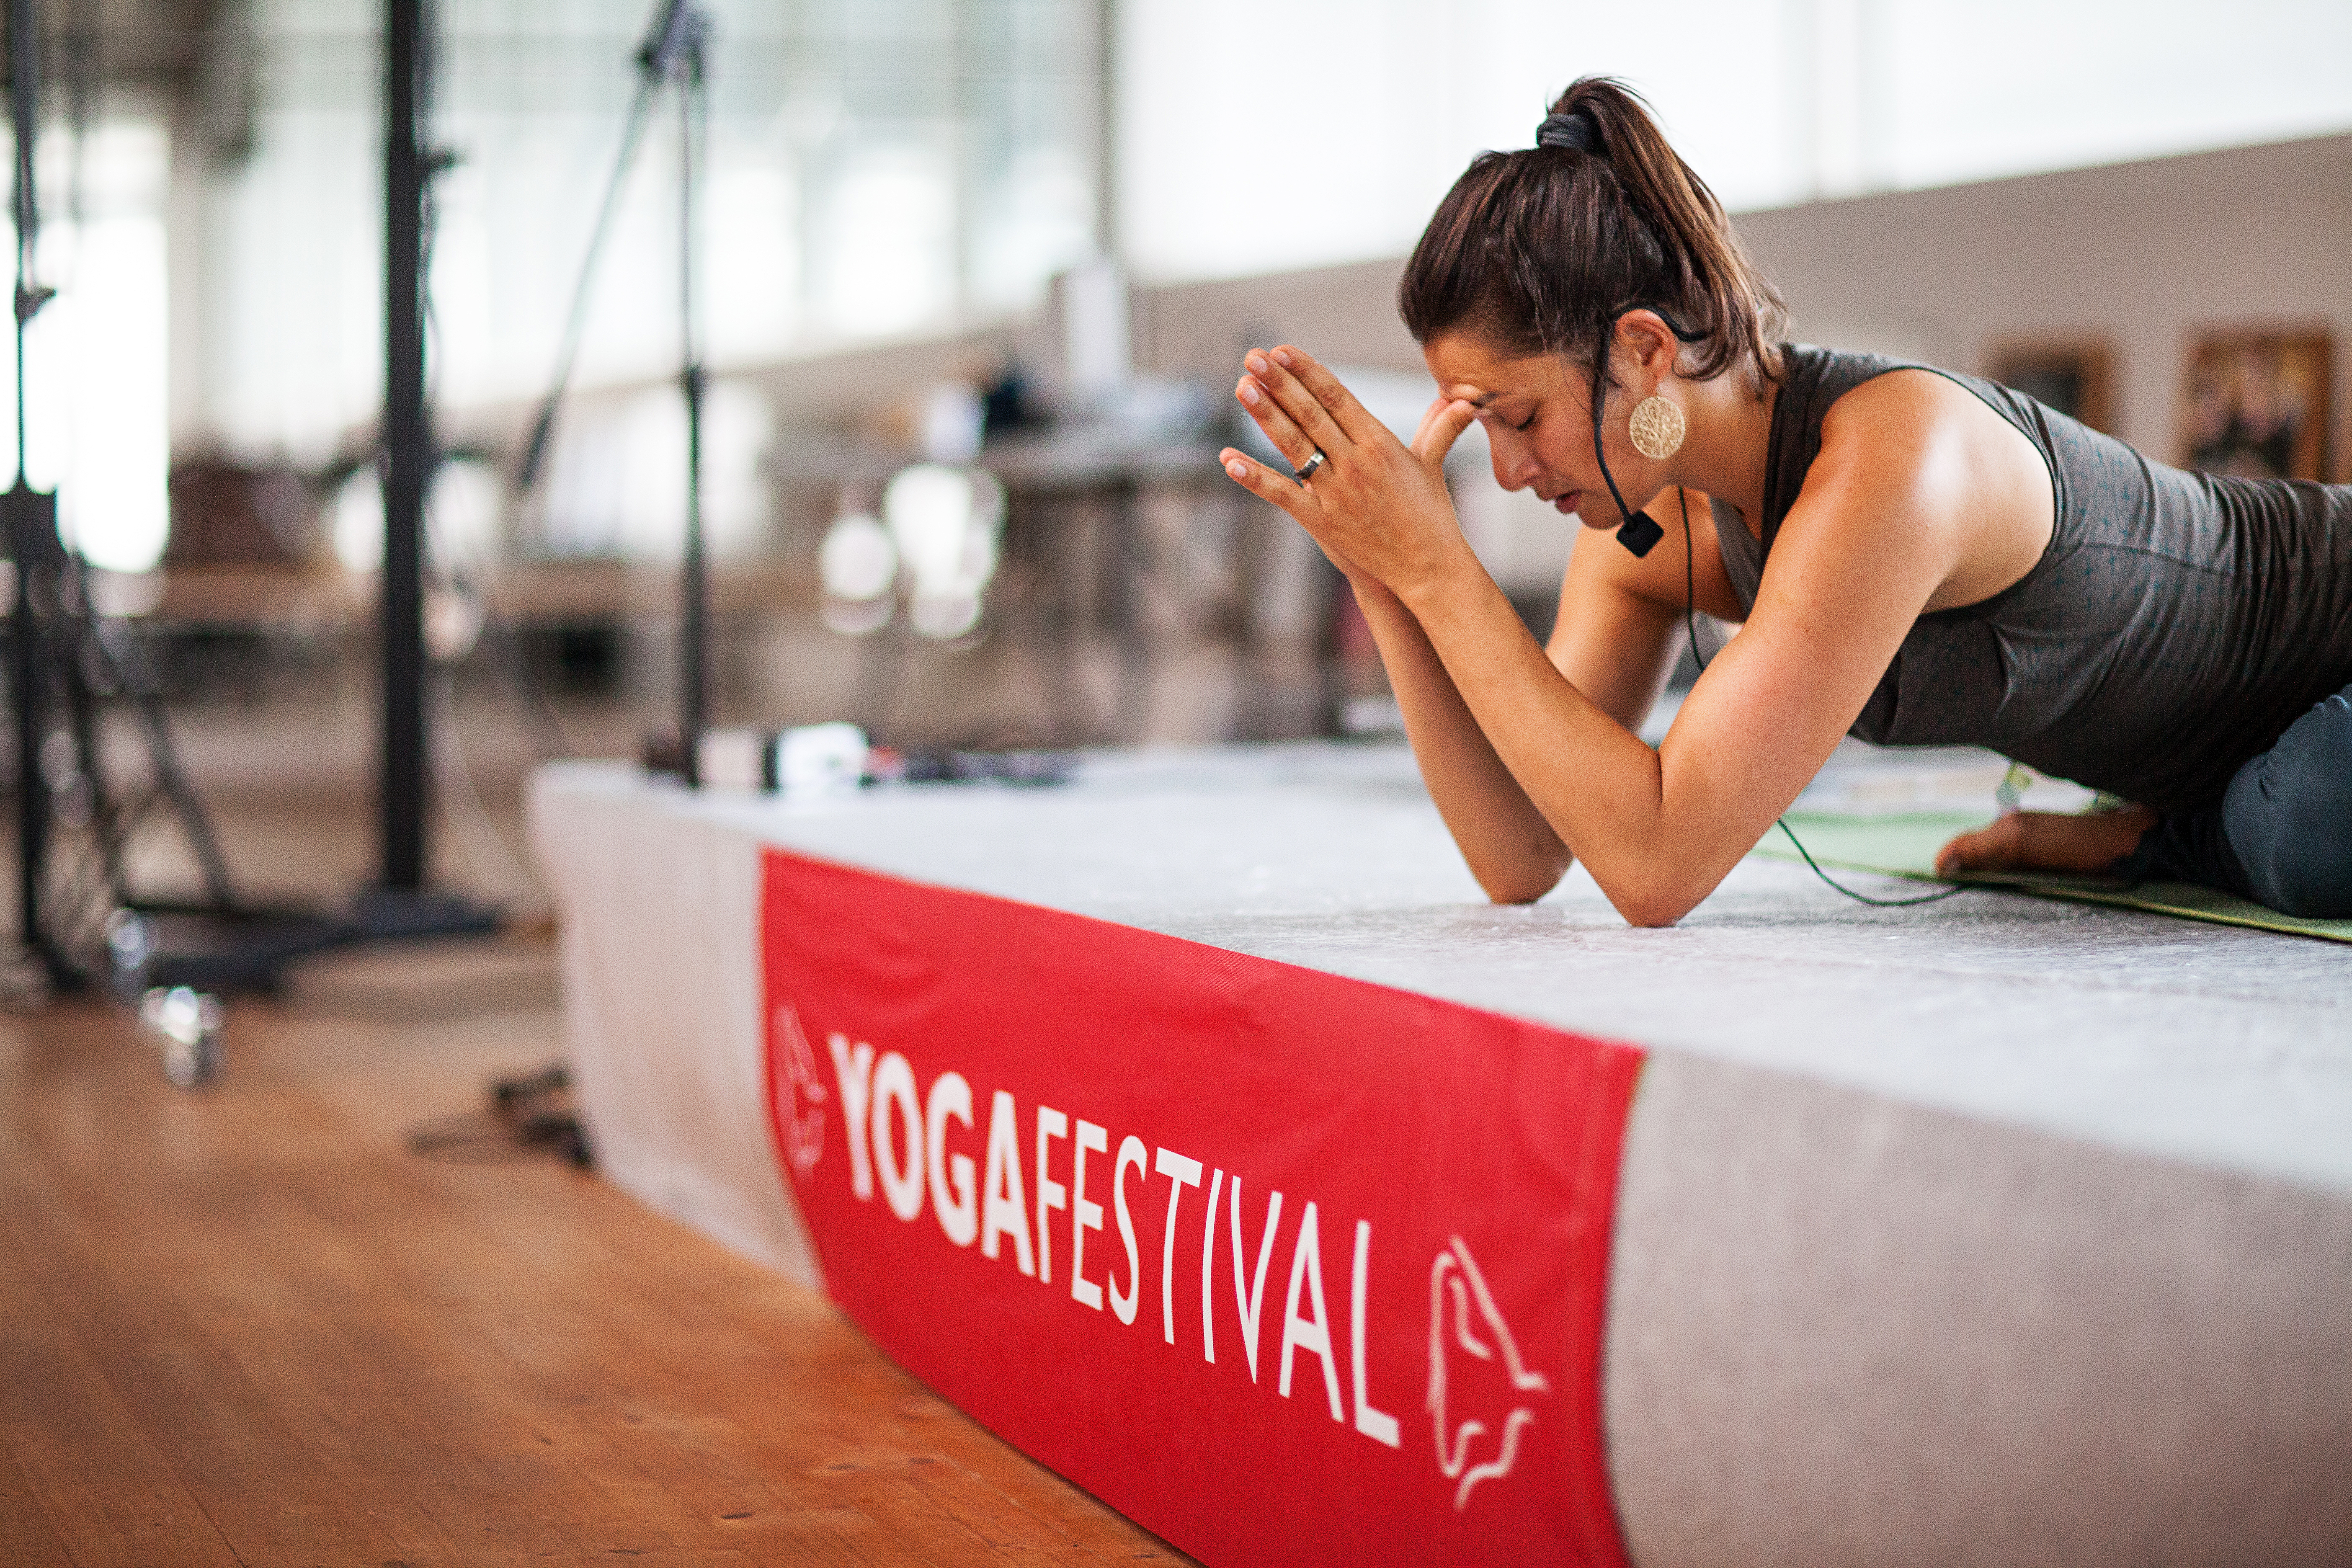 Yogafestival: suono, musica, vibrazione